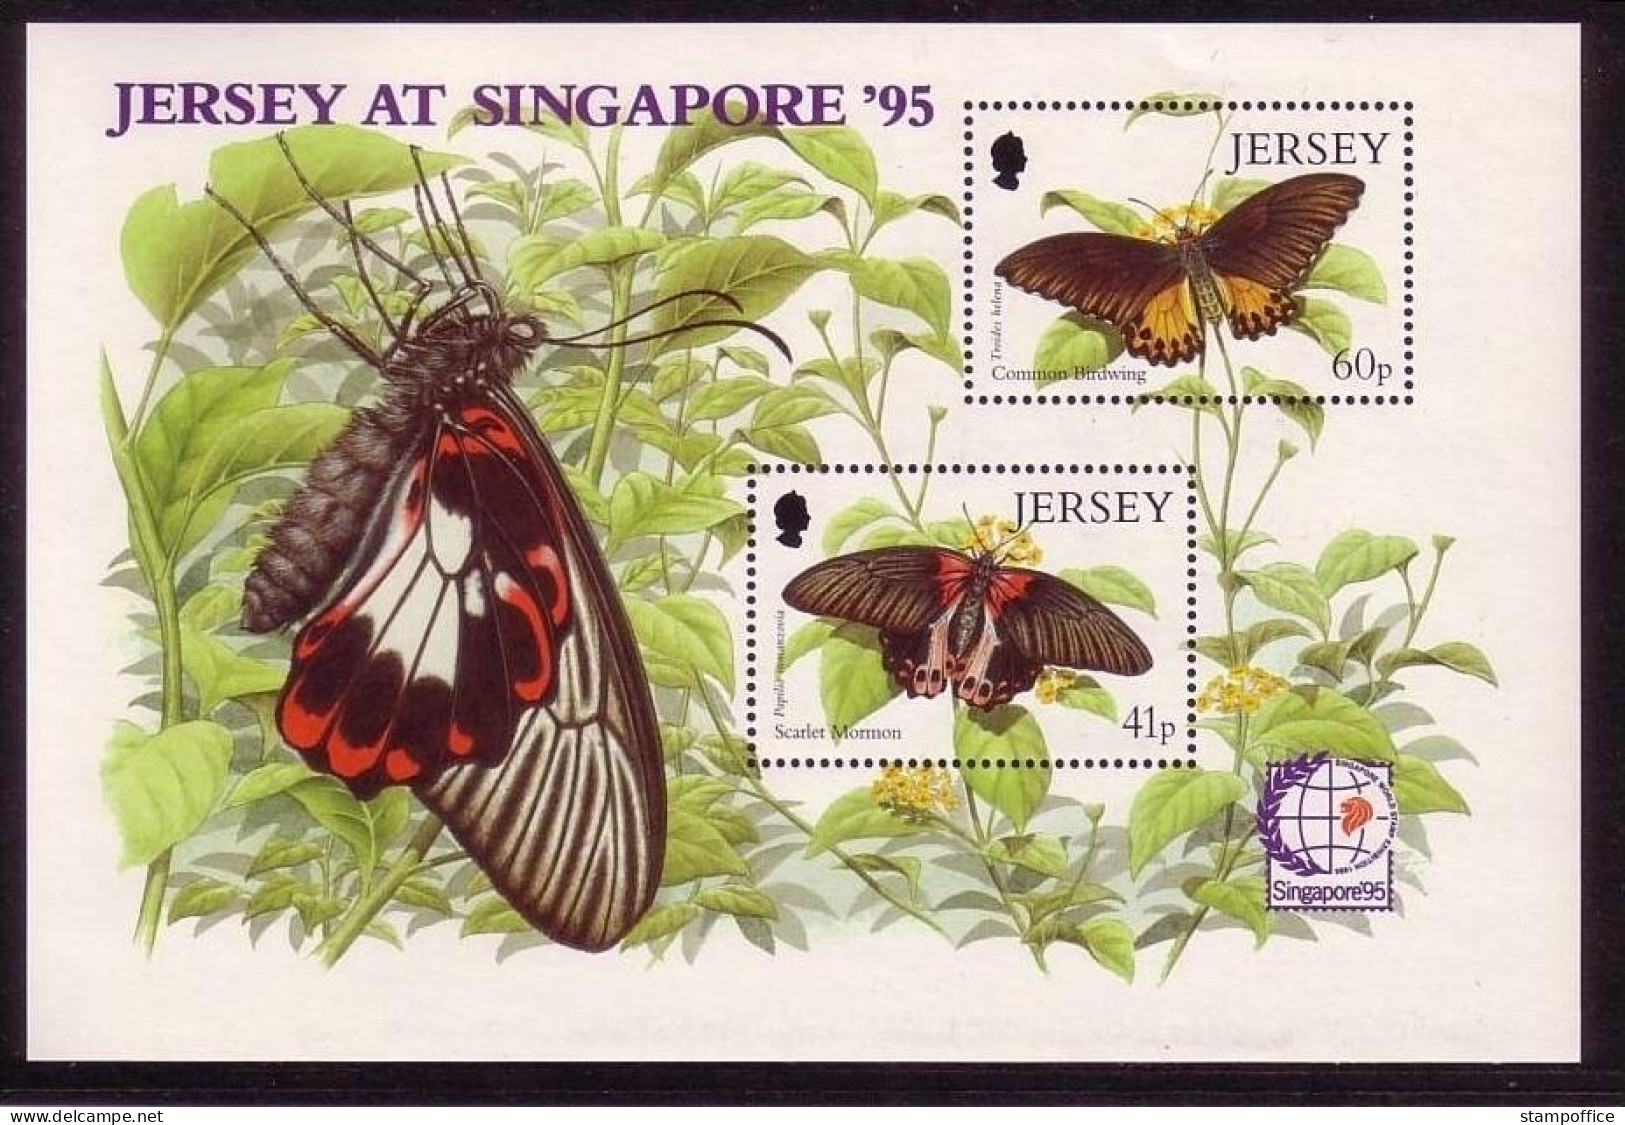 JERSEY BLOCK 11 POSTFRISCH(MINT) SCHMETTERLINGE BUTTERFLIES SINGAPORE `95 - Papillons